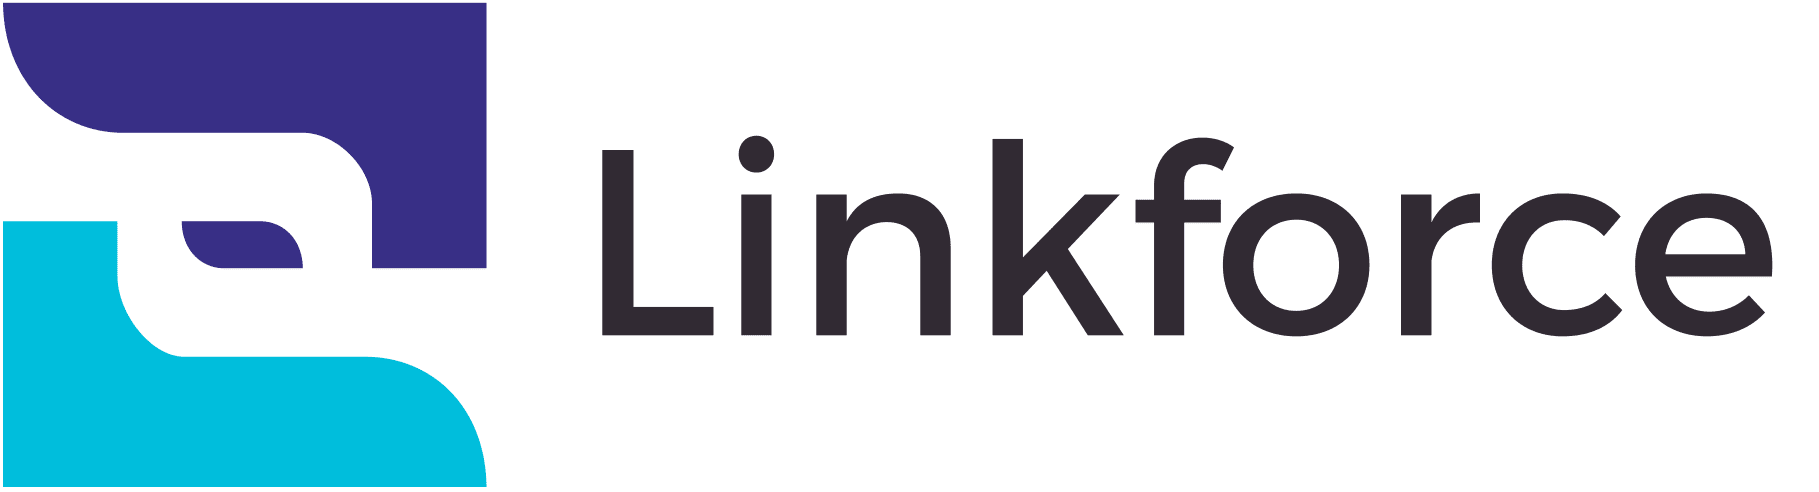 Linkforce: Breve descrizione del marchio Digita qui.